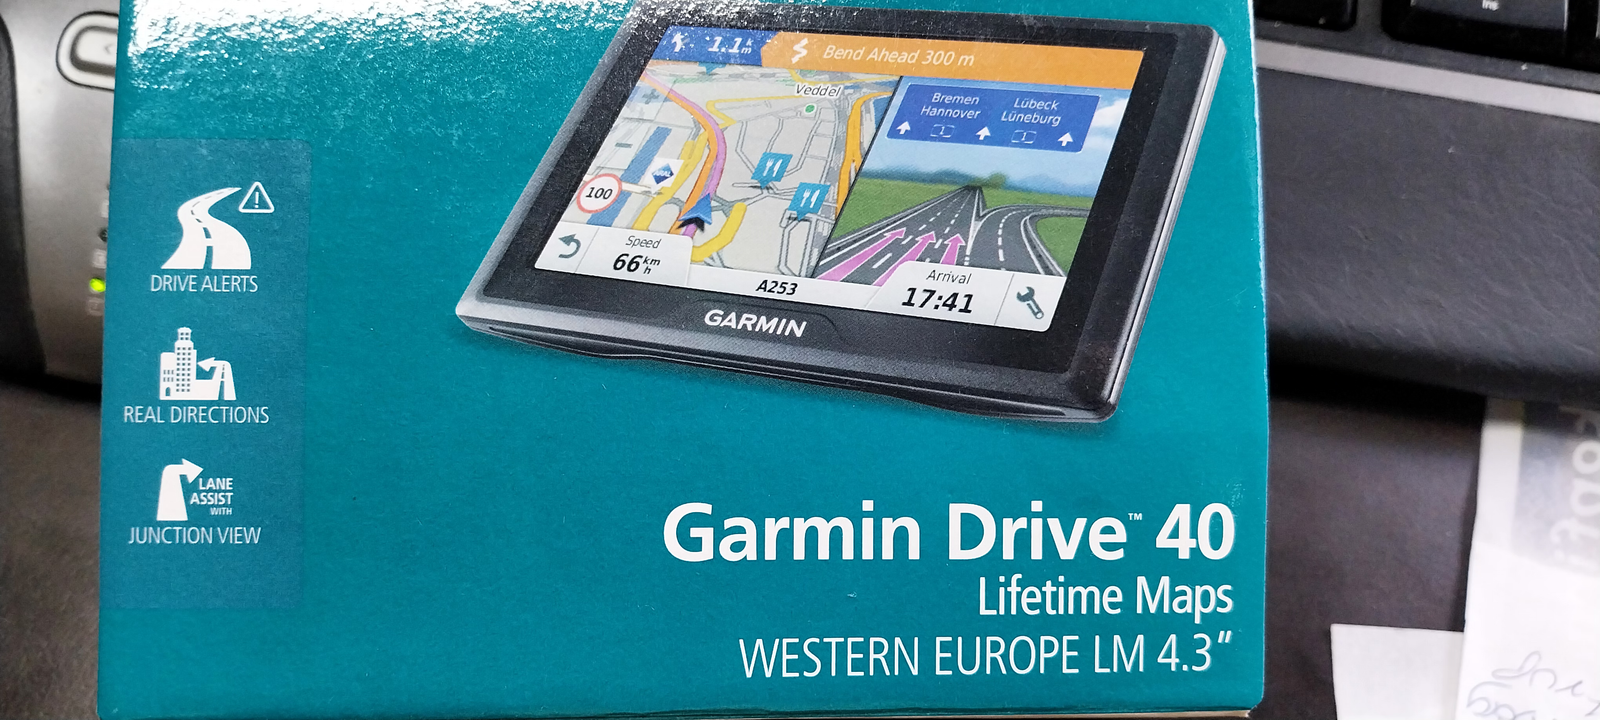 Navigation/GPS, Garmin Garmin Drive 40